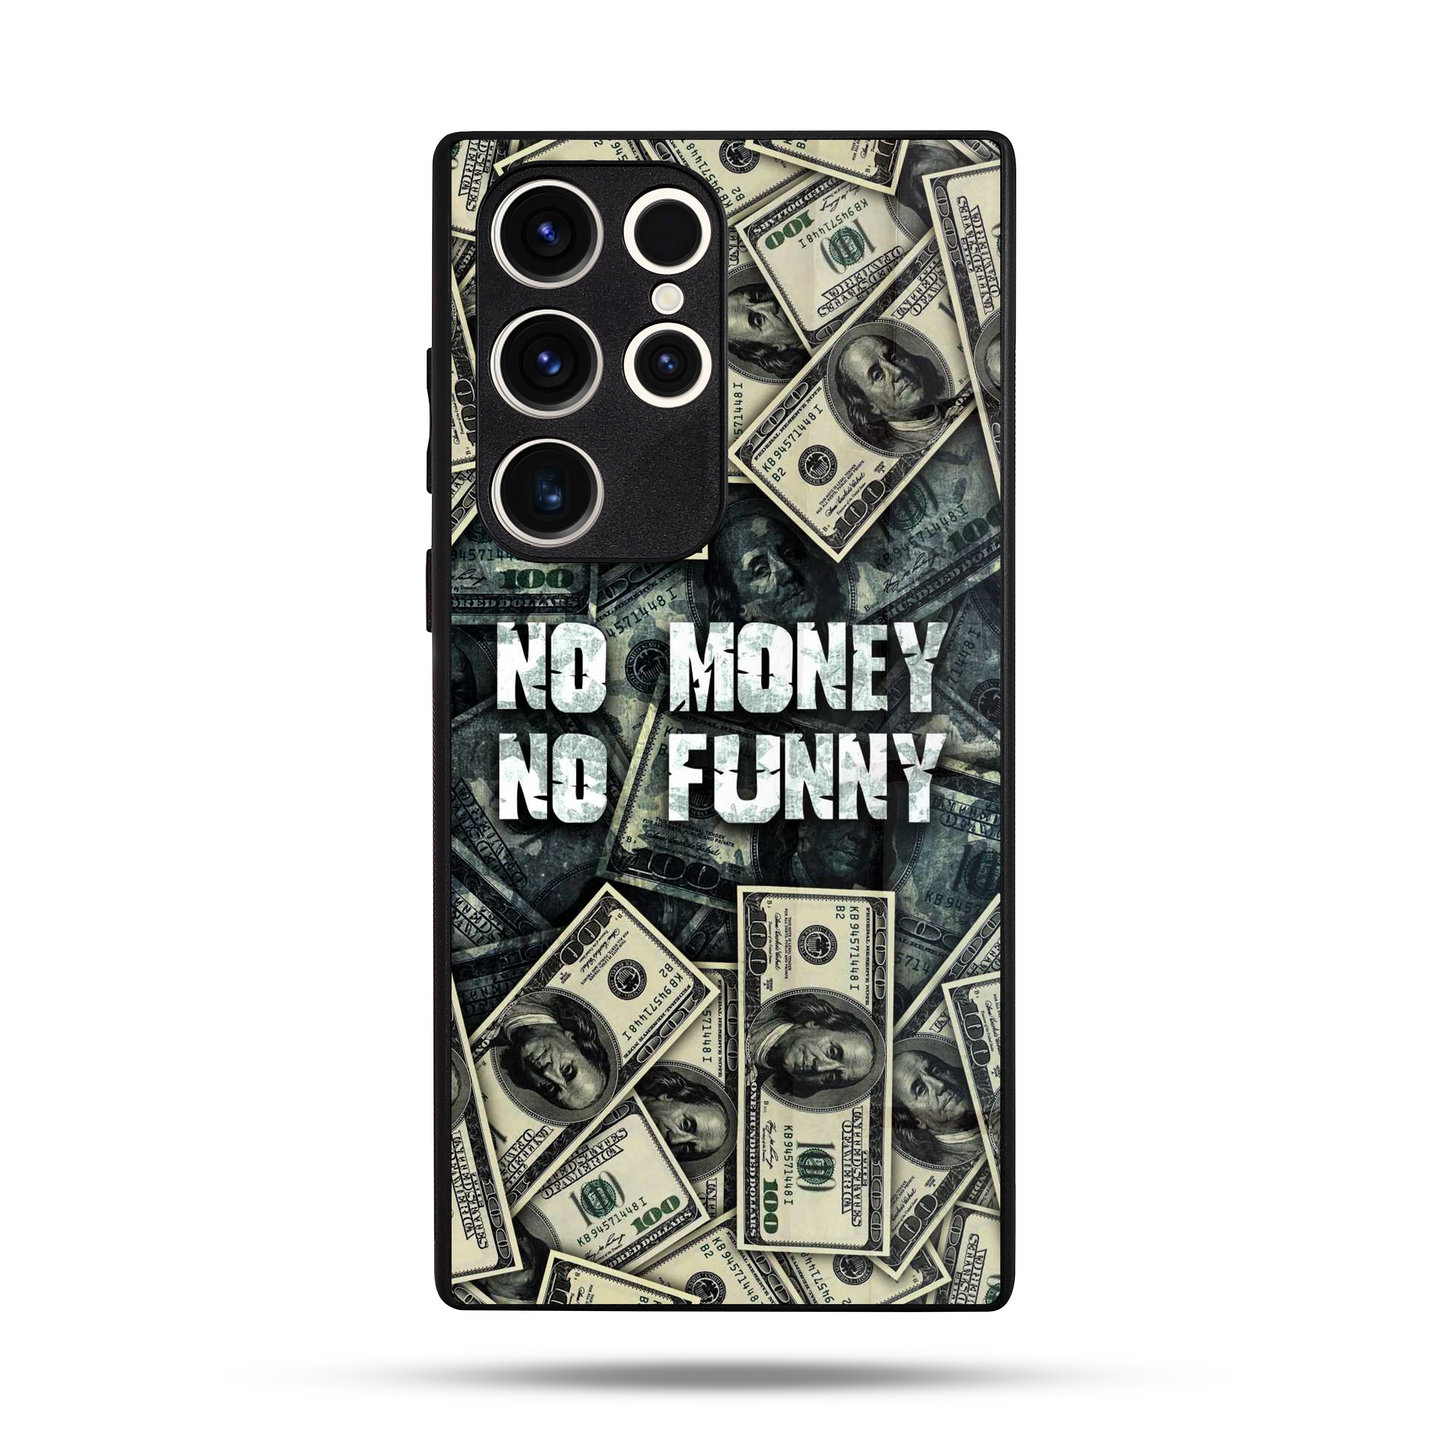 No Money No Funny SuperGlass Case Cover